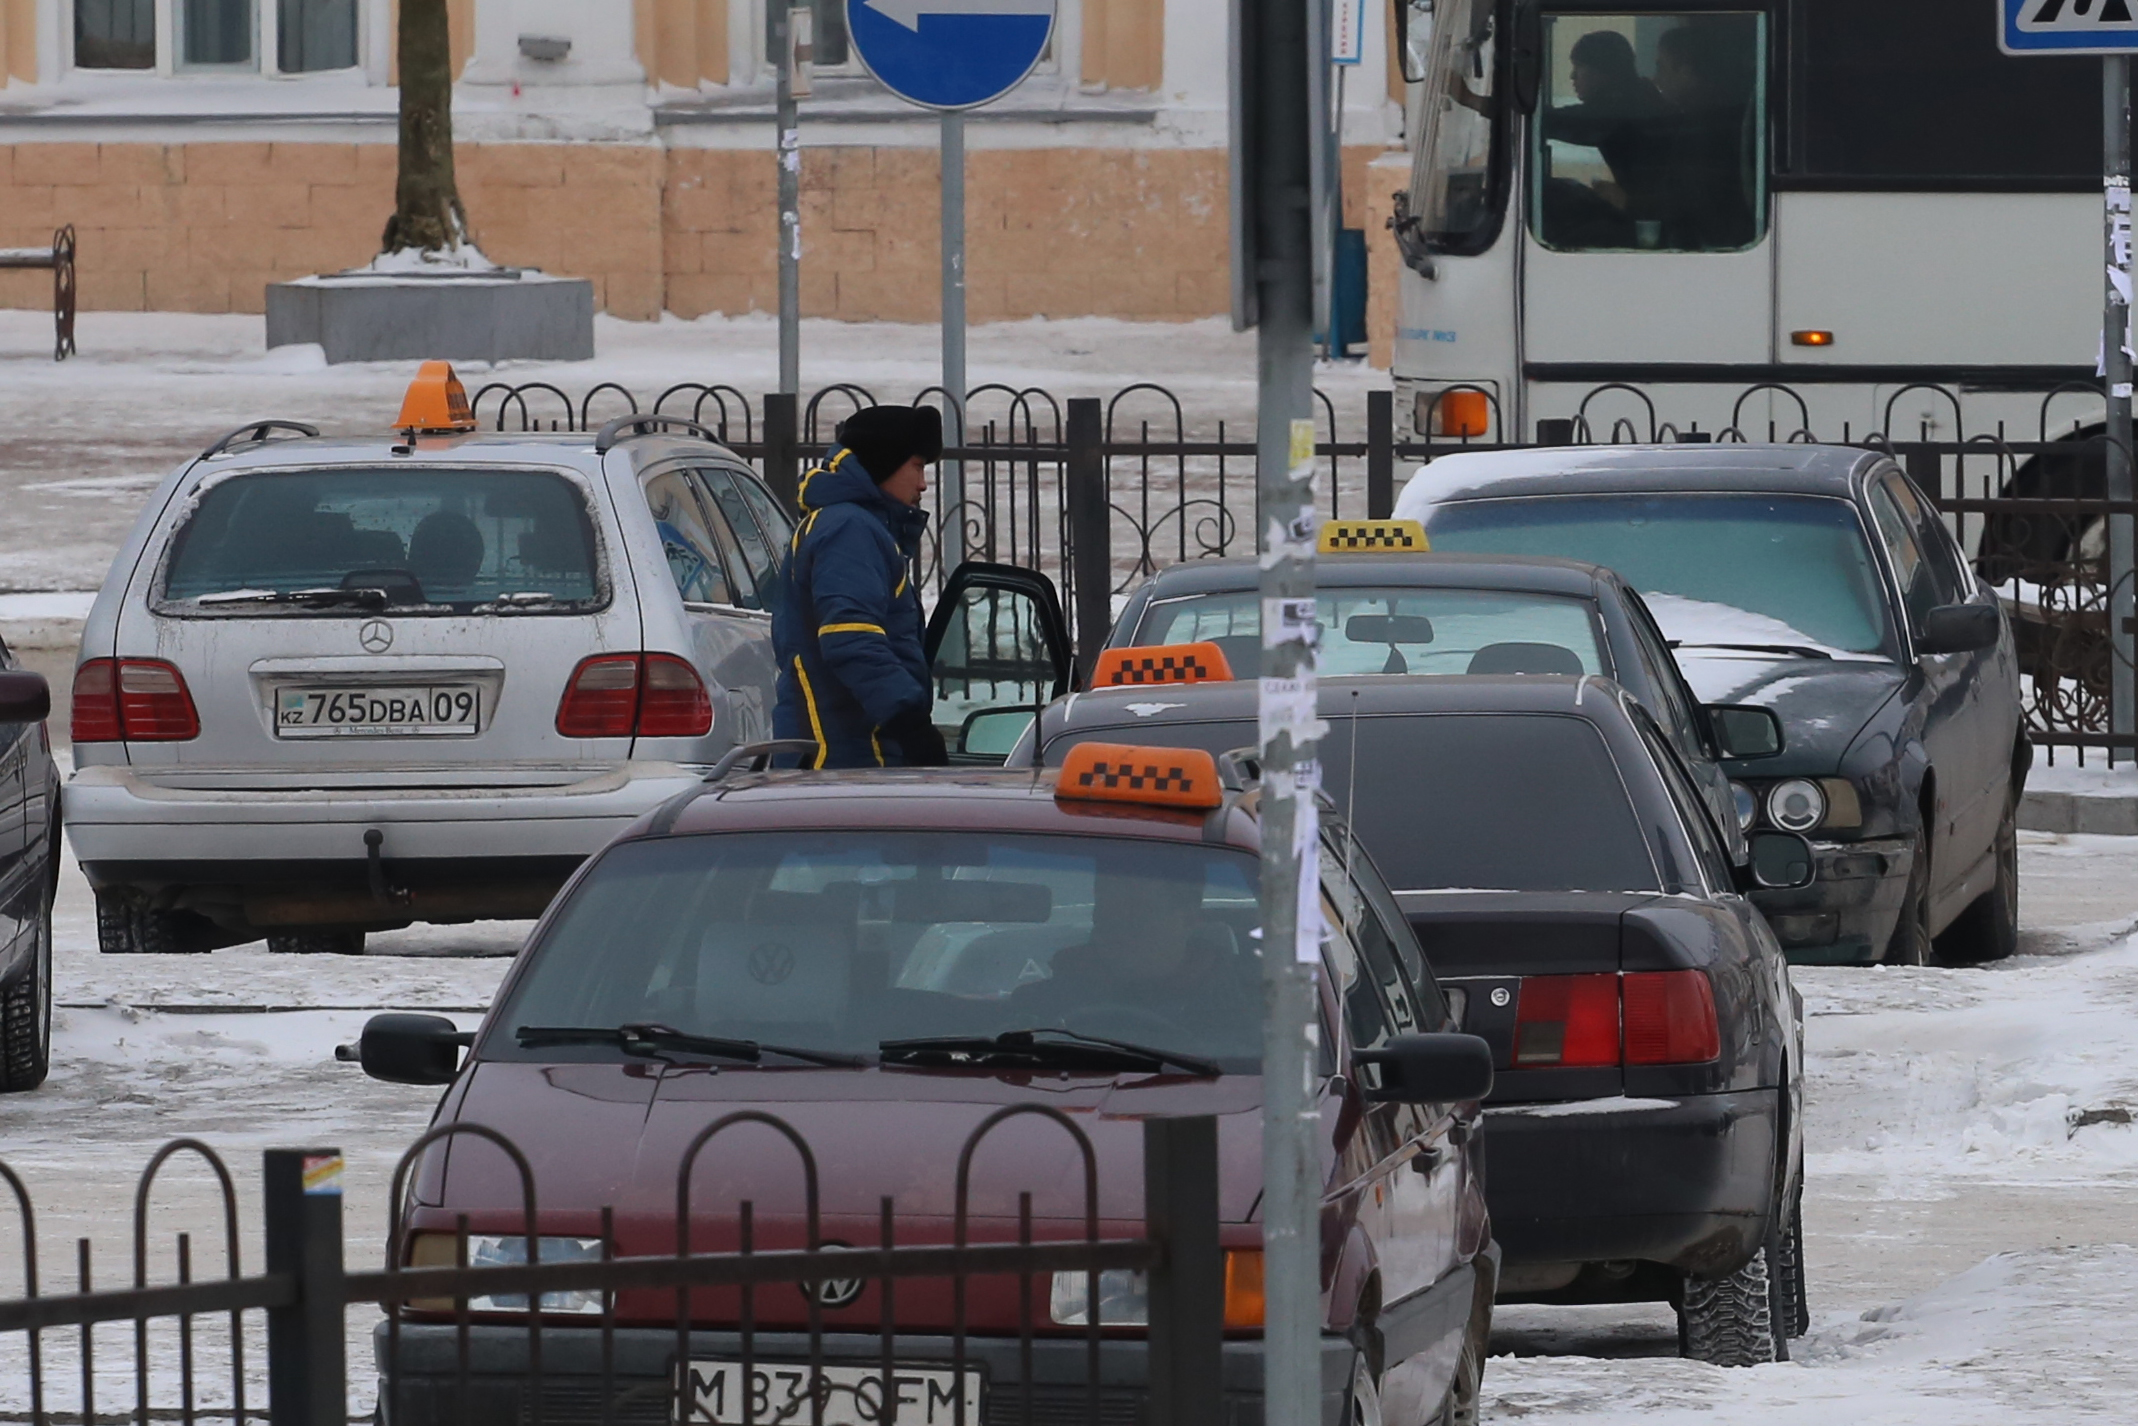 Со следующего года в Казахстане введут специальный налоговый режим для таксистов и курьеров онлайн-сервисов. Об этом на правительственном часе рассказала министр труда и социальной защиты населения Тамара Дуйсенова.